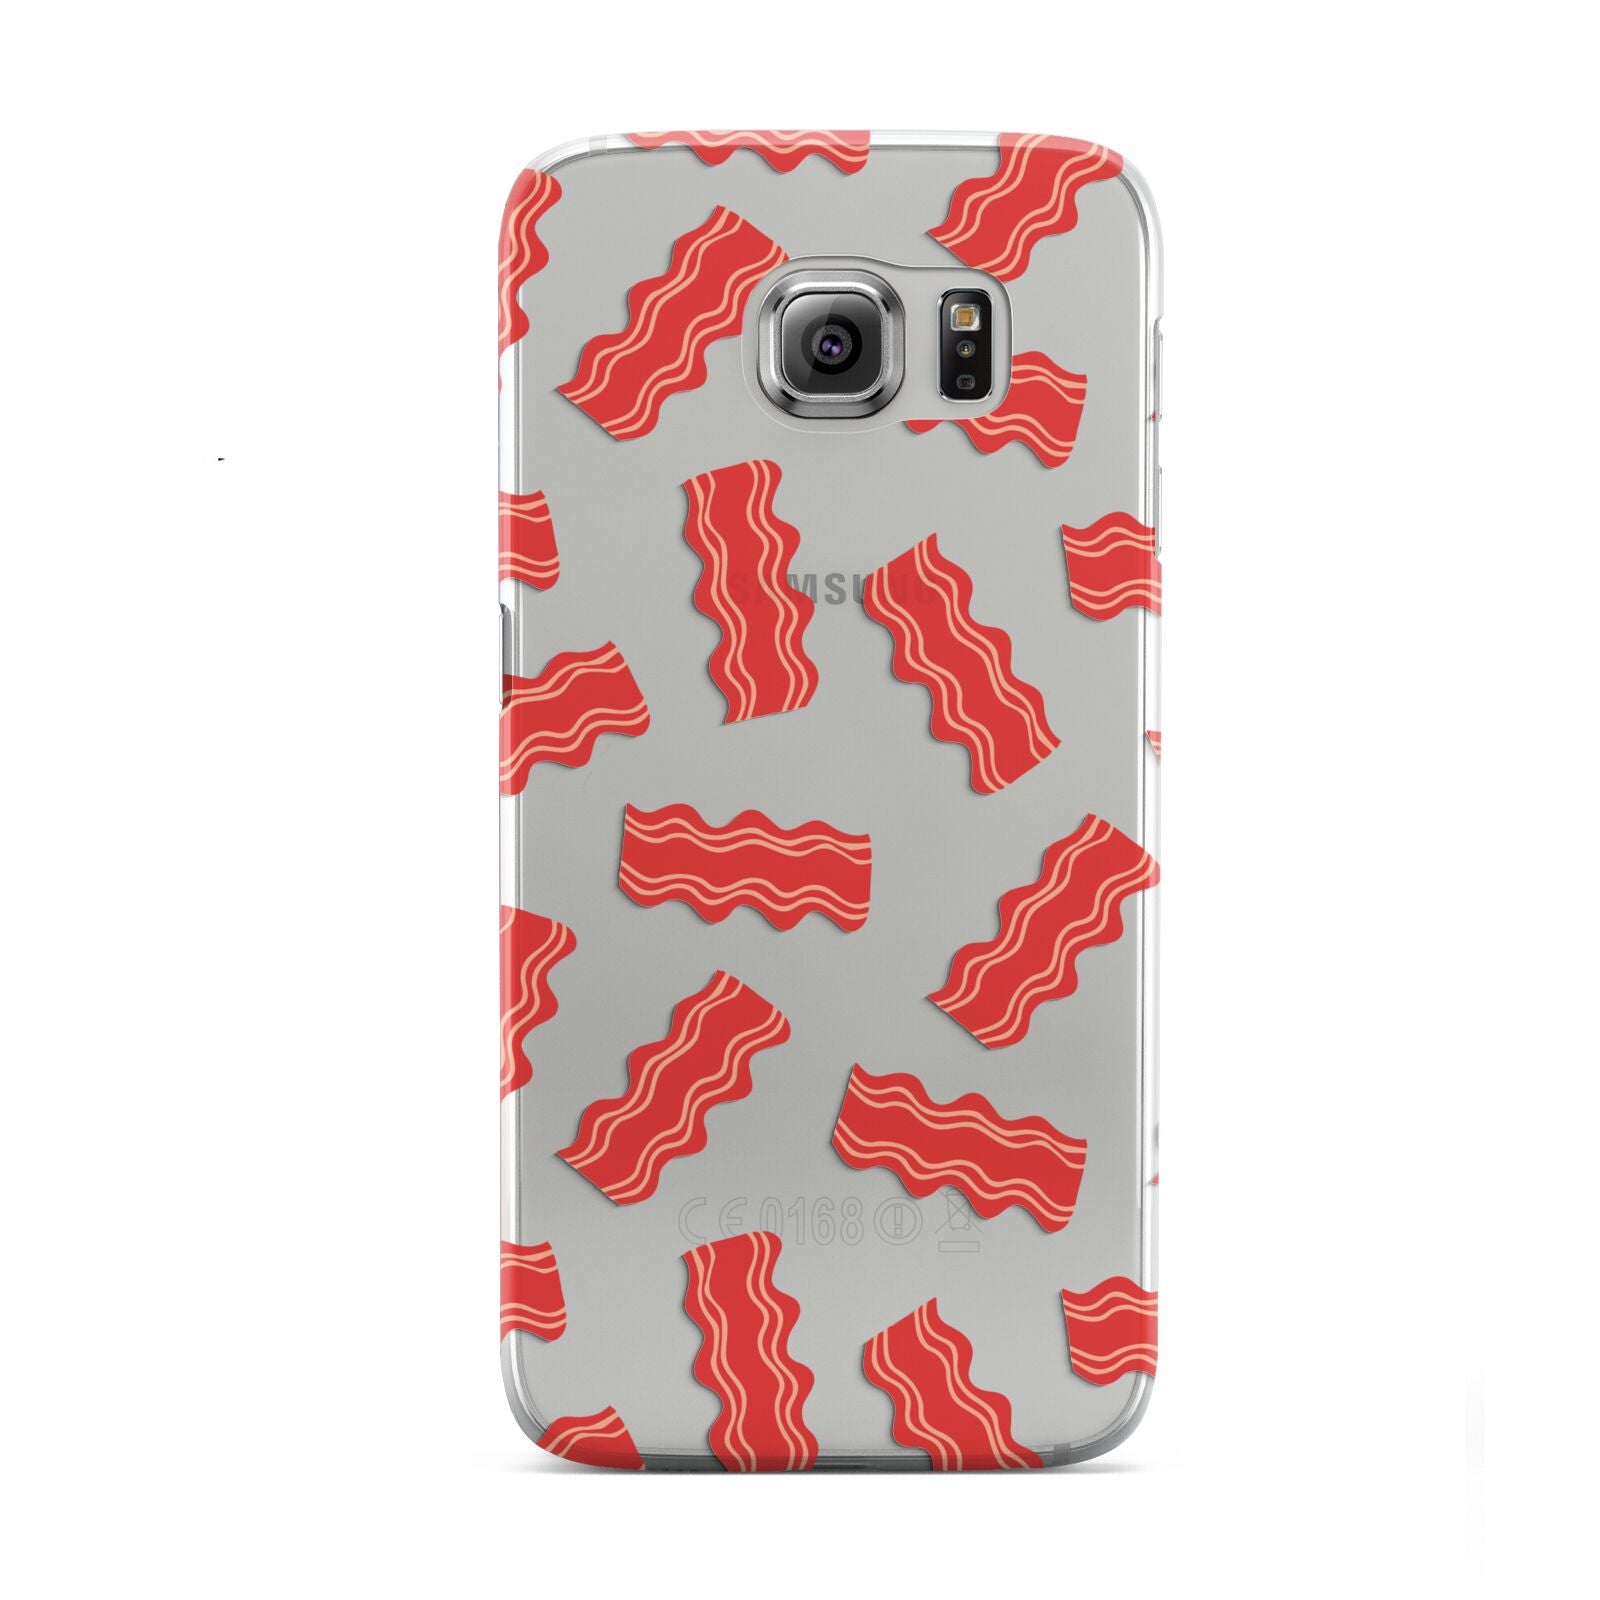 Bacon Samsung Galaxy S6 Case